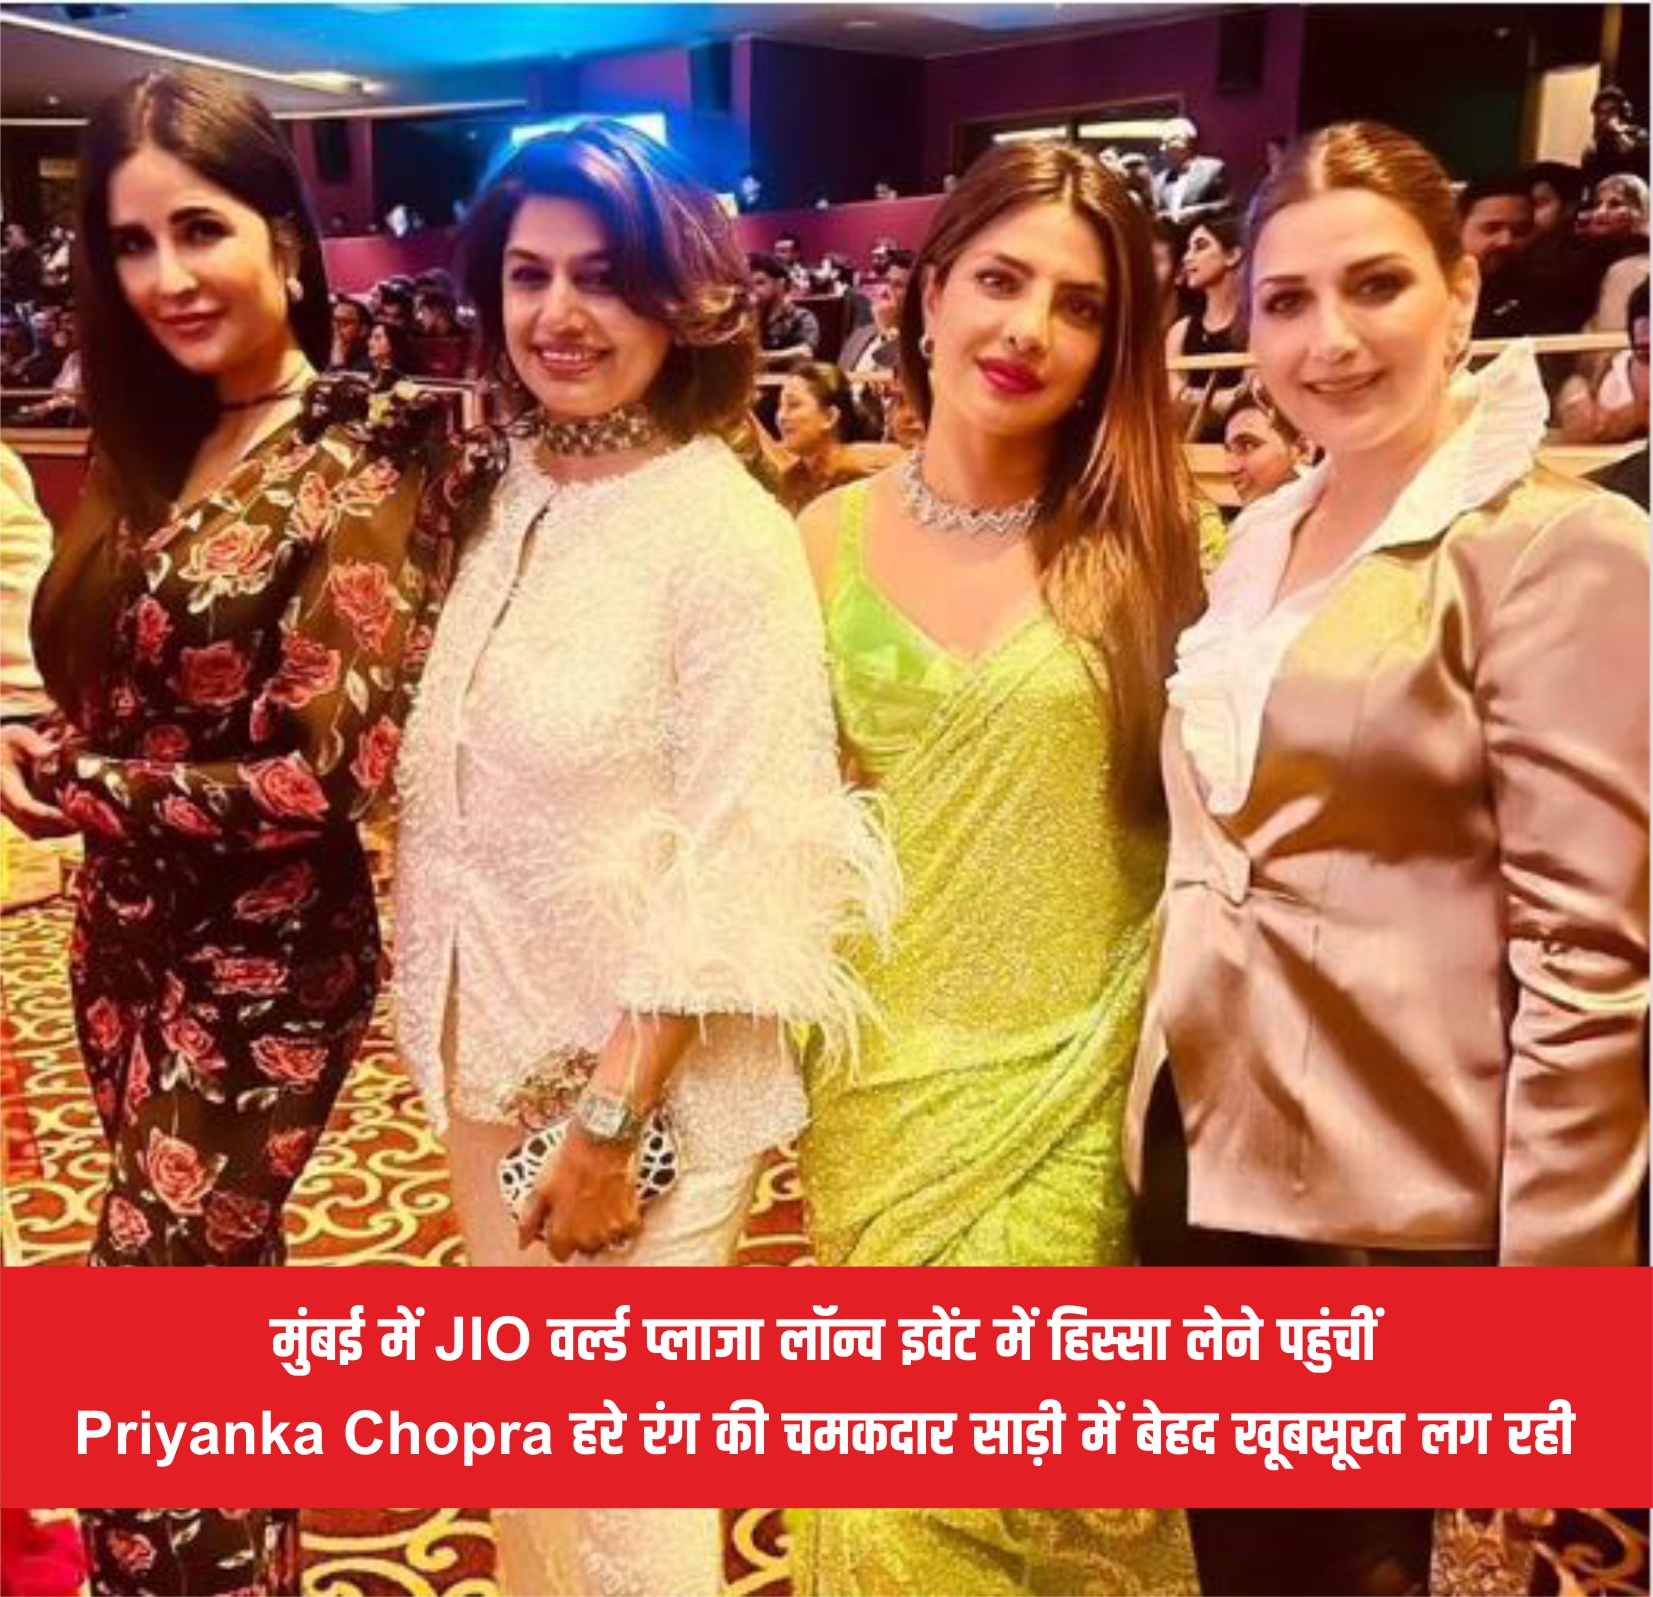 मुंबई में JIO वर्ल्ड प्लाजा लॉन्च इवेंट में हिस्सा लेने पहुंचीं Priyanka Chopra हरे रंग की चमकदार साड़ी में बेहद खूबसूरत लग रही